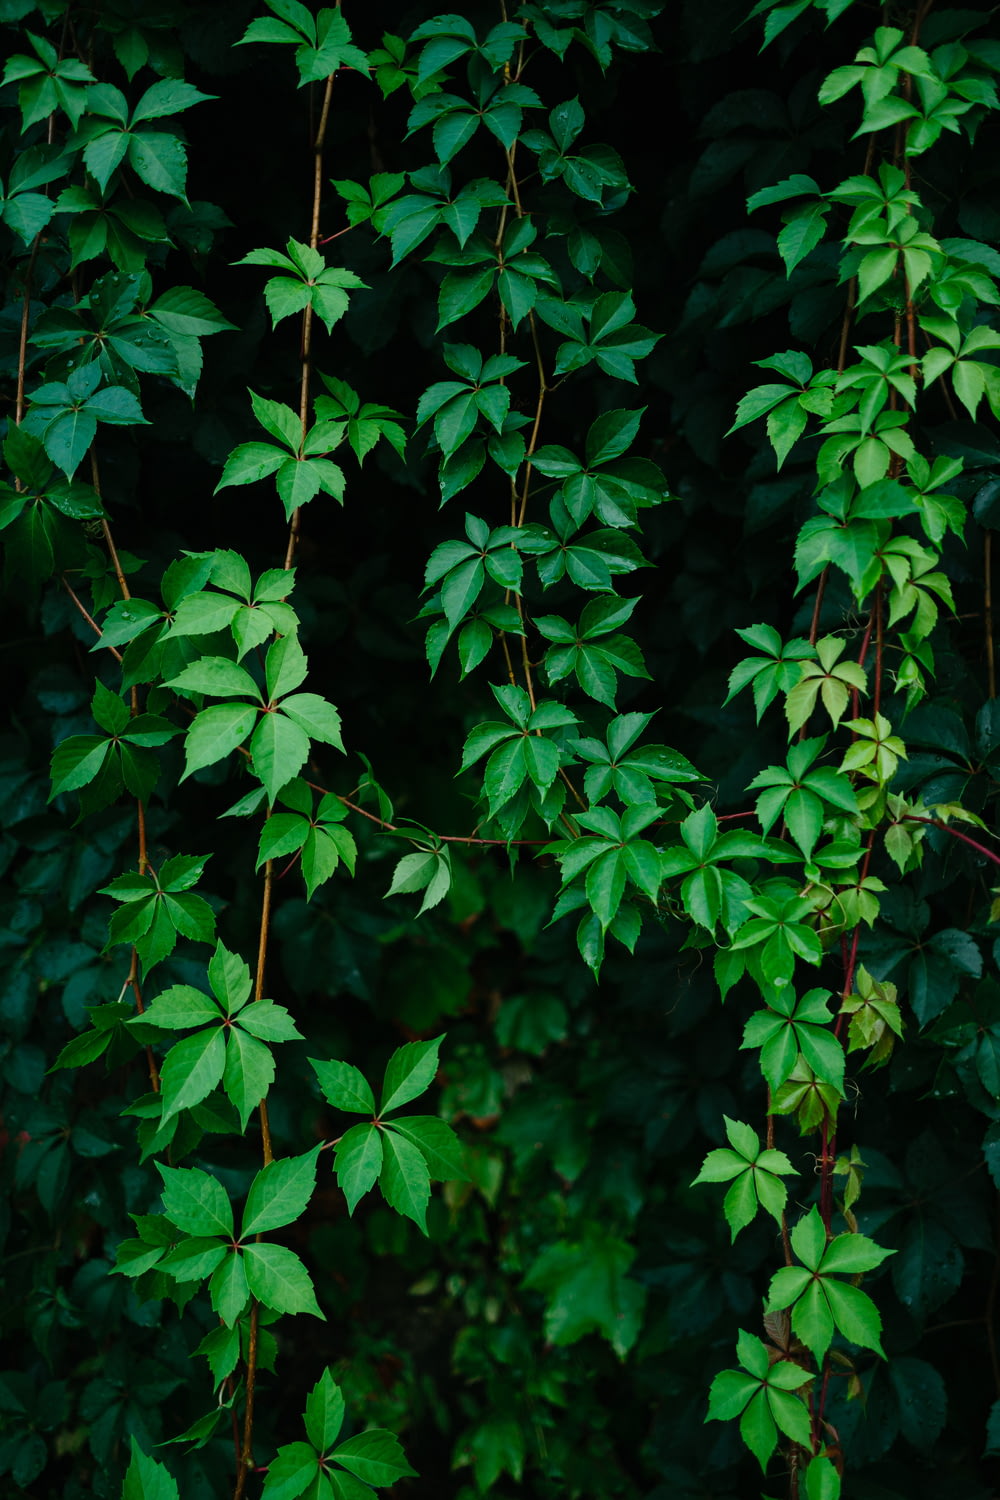 녹색 잎이 달린 덩굴 식물